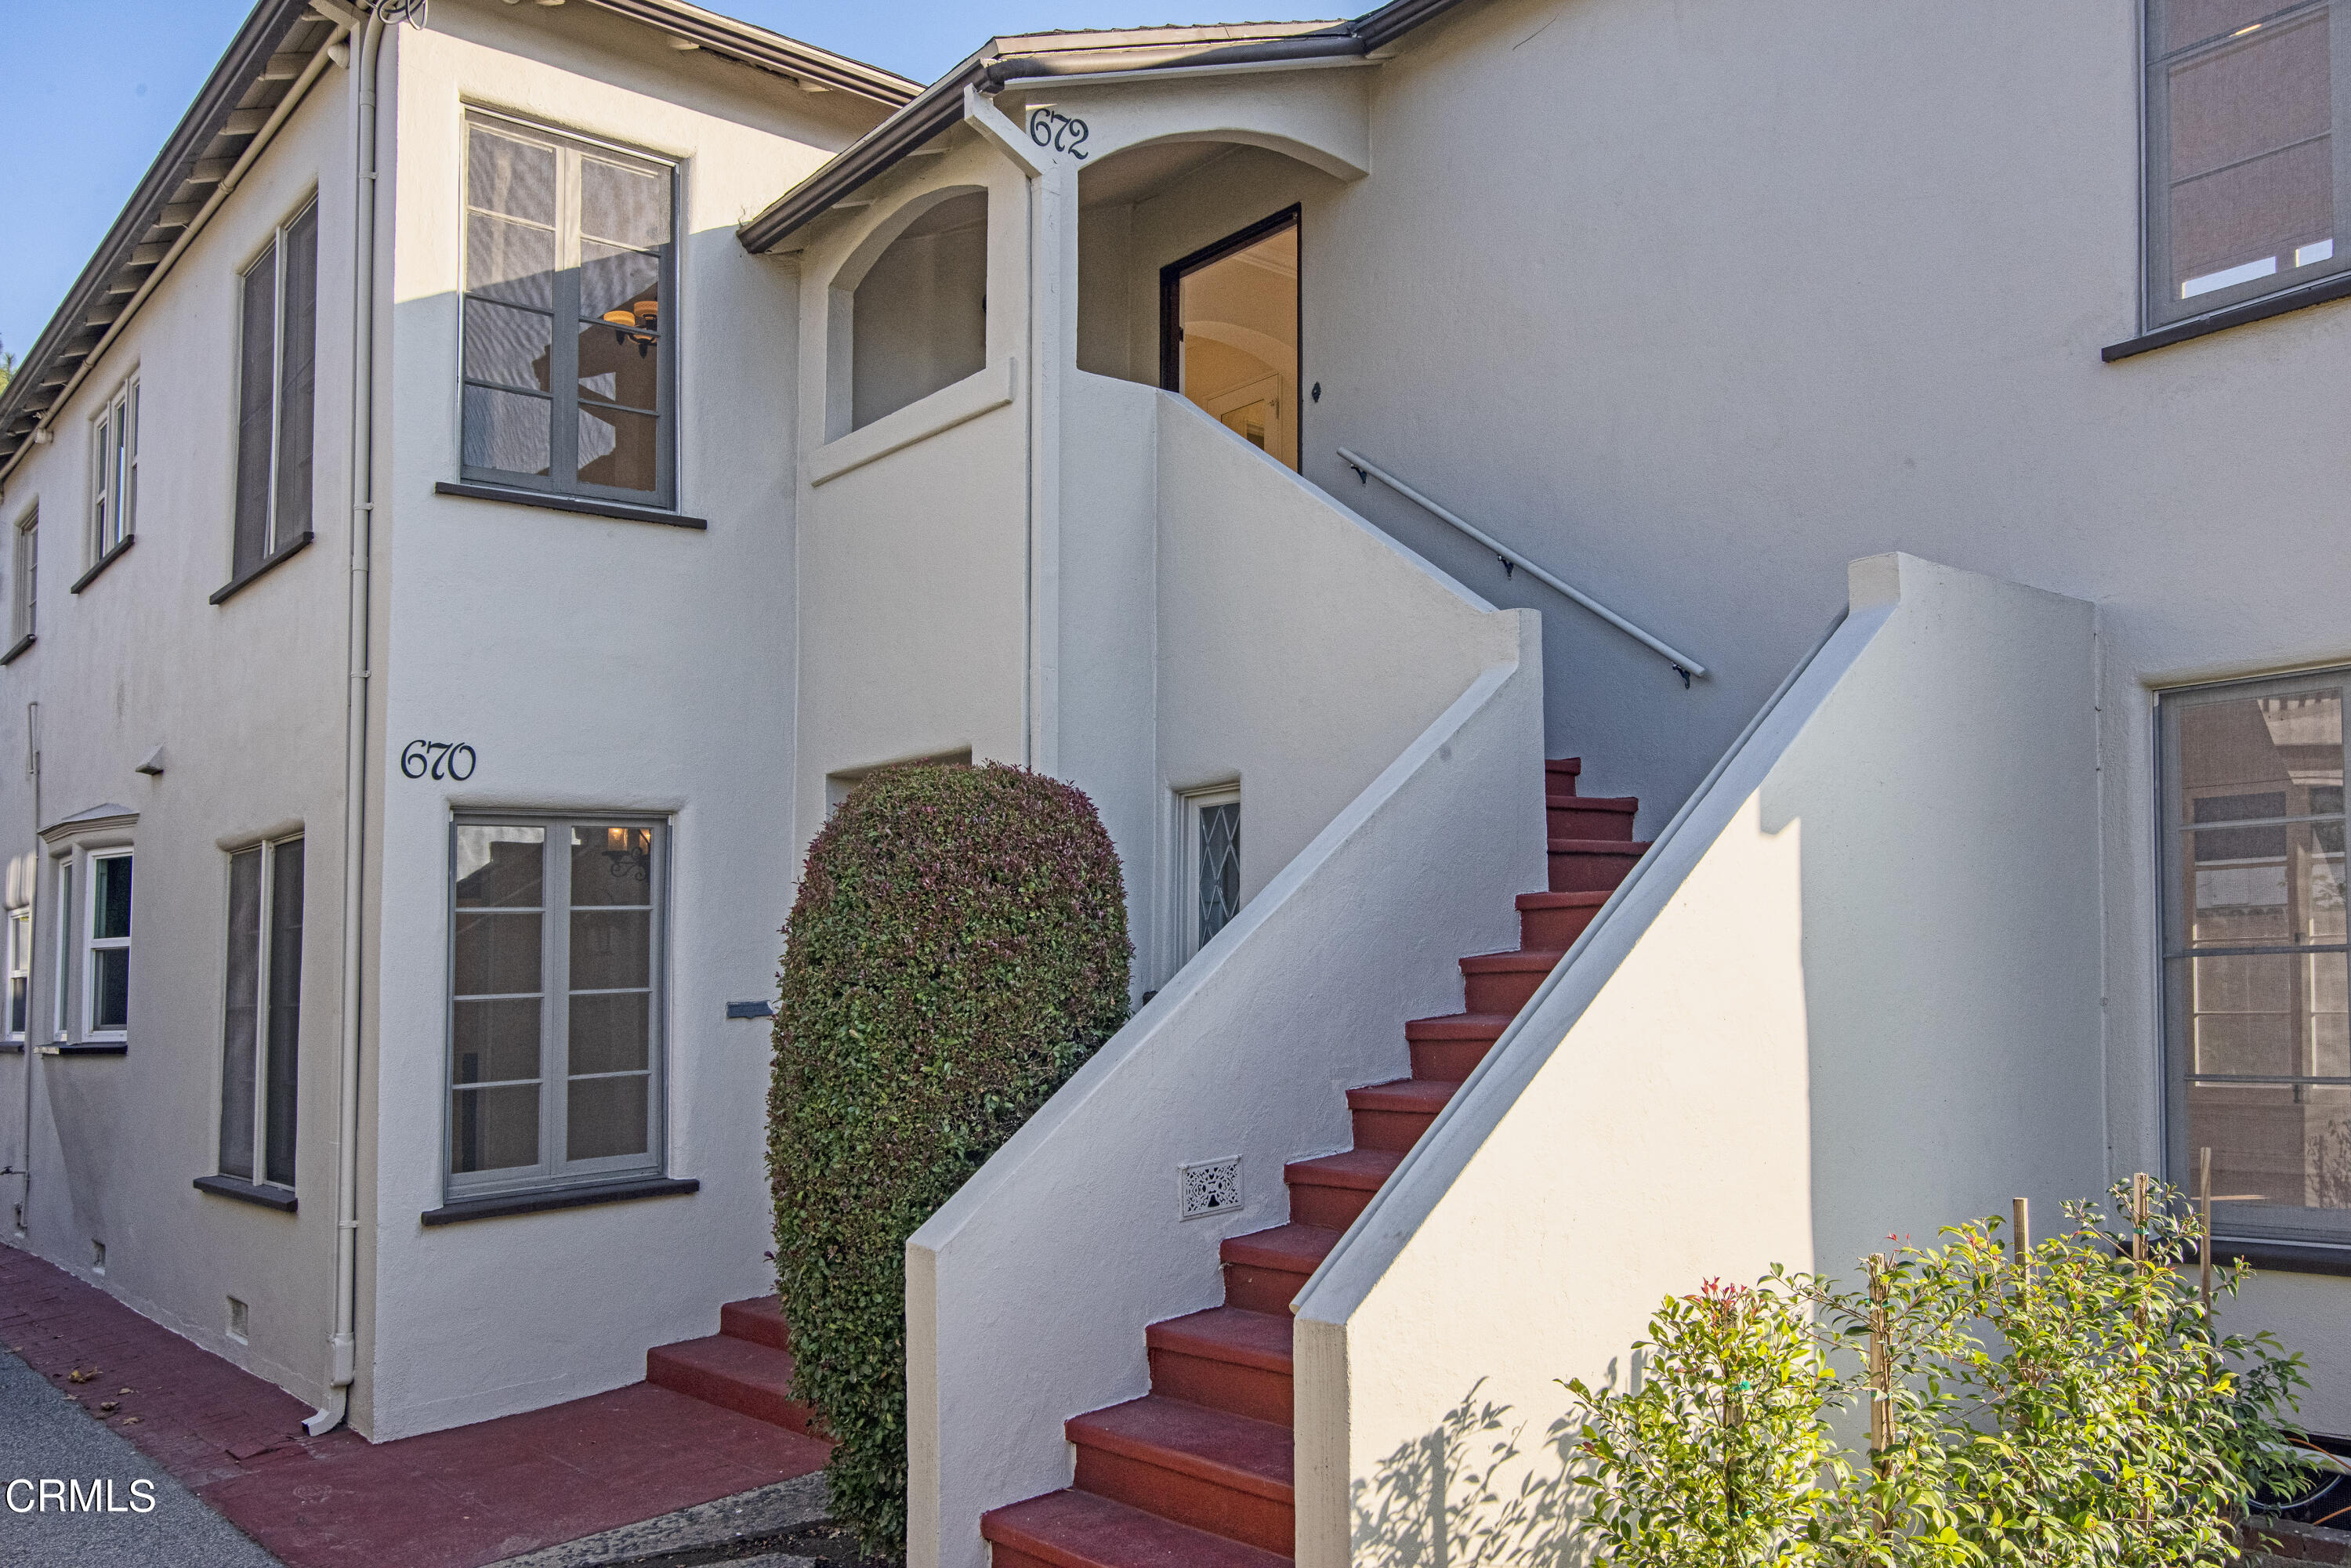 Tìm kiếm một ngôi nhà đẹp tại Pasadena, CA 91106? Hình ảnh rực rỡ và hấp dẫn này sẽ giúp bạn tìm được ngôi nhà mơ ước của mình. Tận hưởng không gian sinh hoạt tuyệt vời và sự tiện nghi đầy đủ tại nơi đây. 